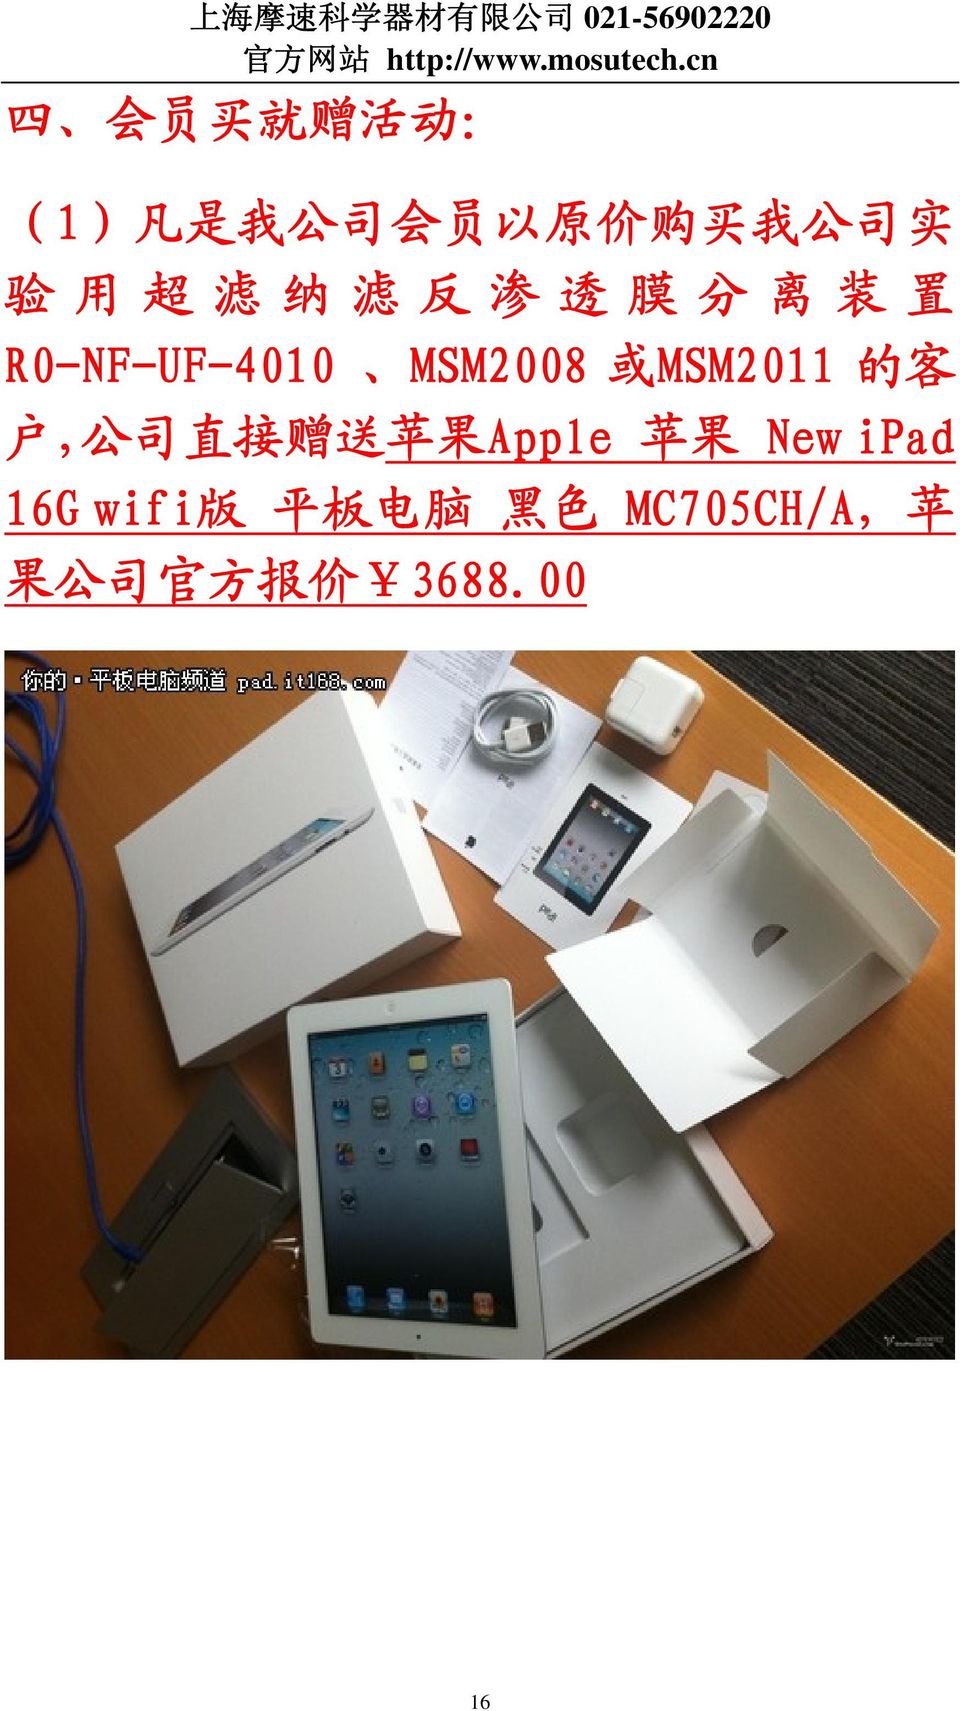 MSM2011 的 客 户, 公 司 直 接 赠 送 苹 果 Apple 苹 果 New ipad 16G